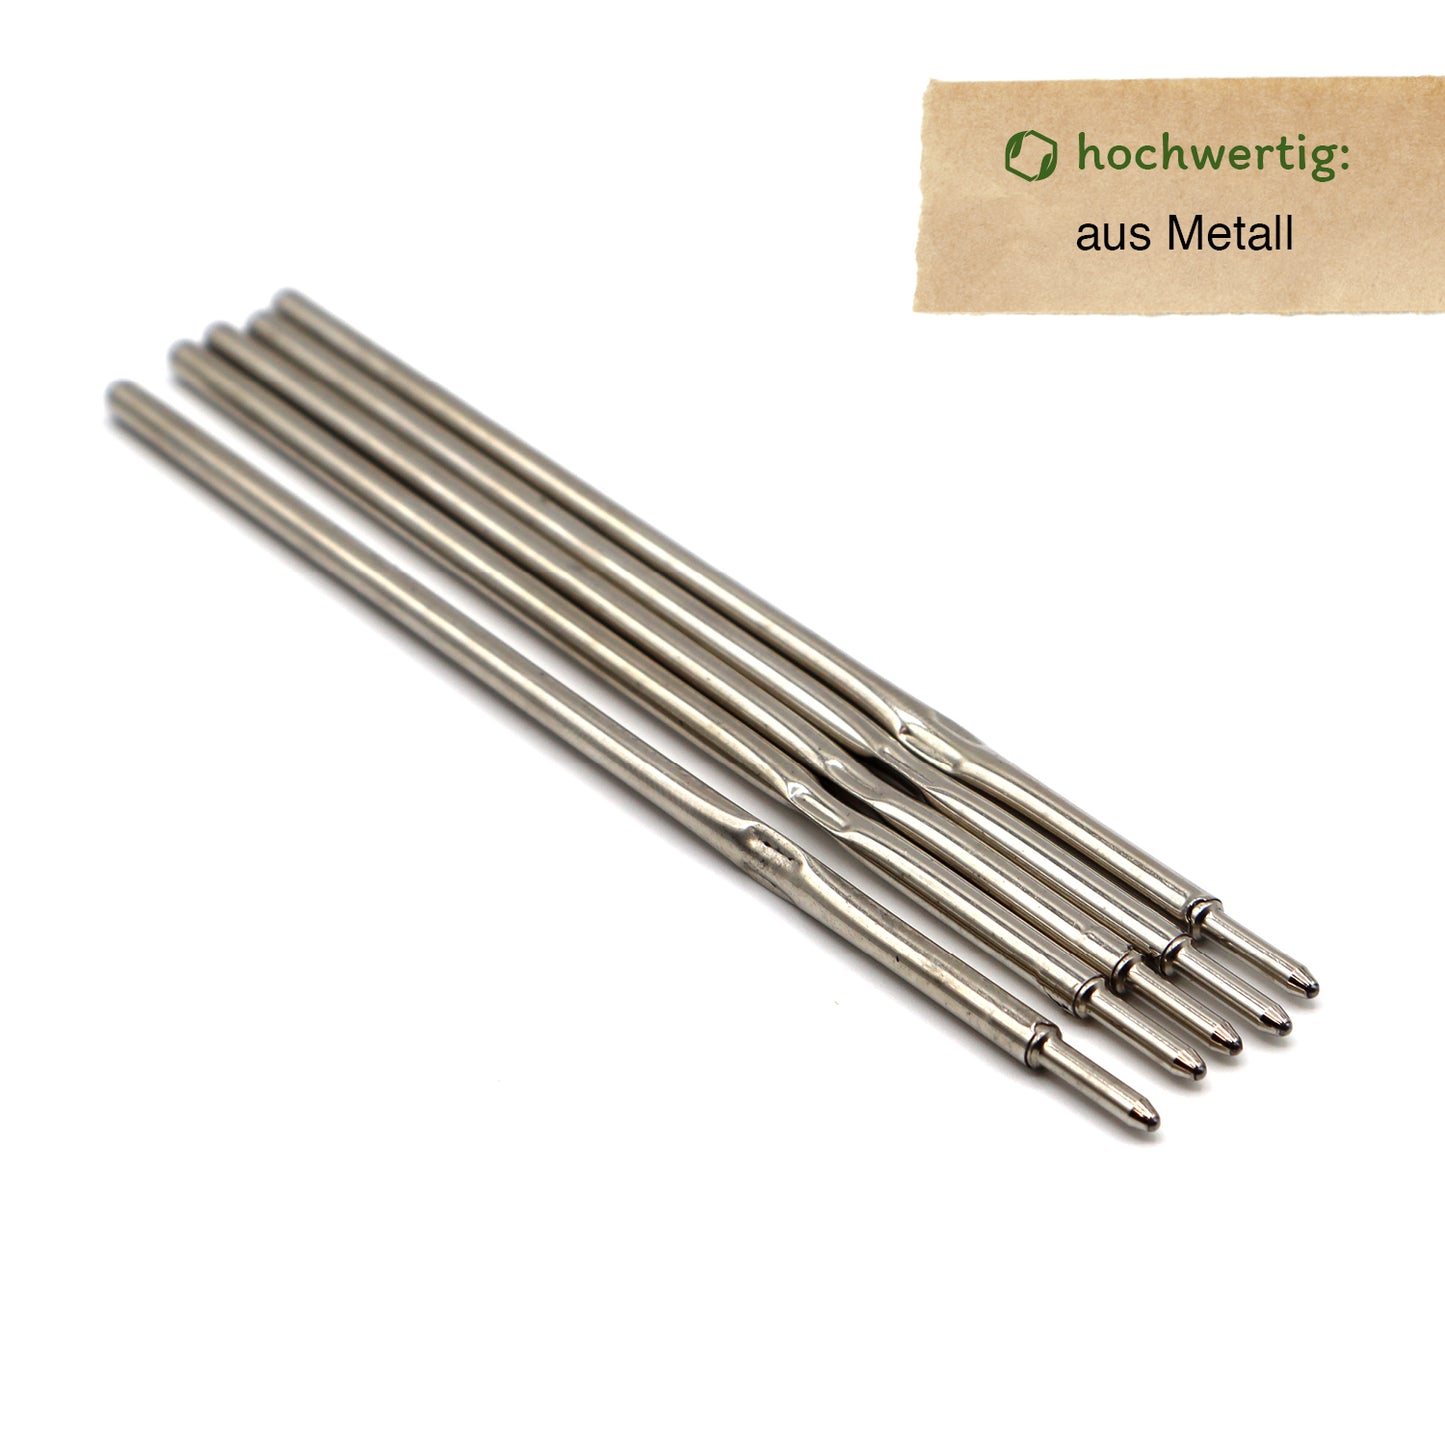 MORWE Metall-Kugelschreiberminen-Set – Nachhaltige Standard Minen A2 / X10 5 Stück